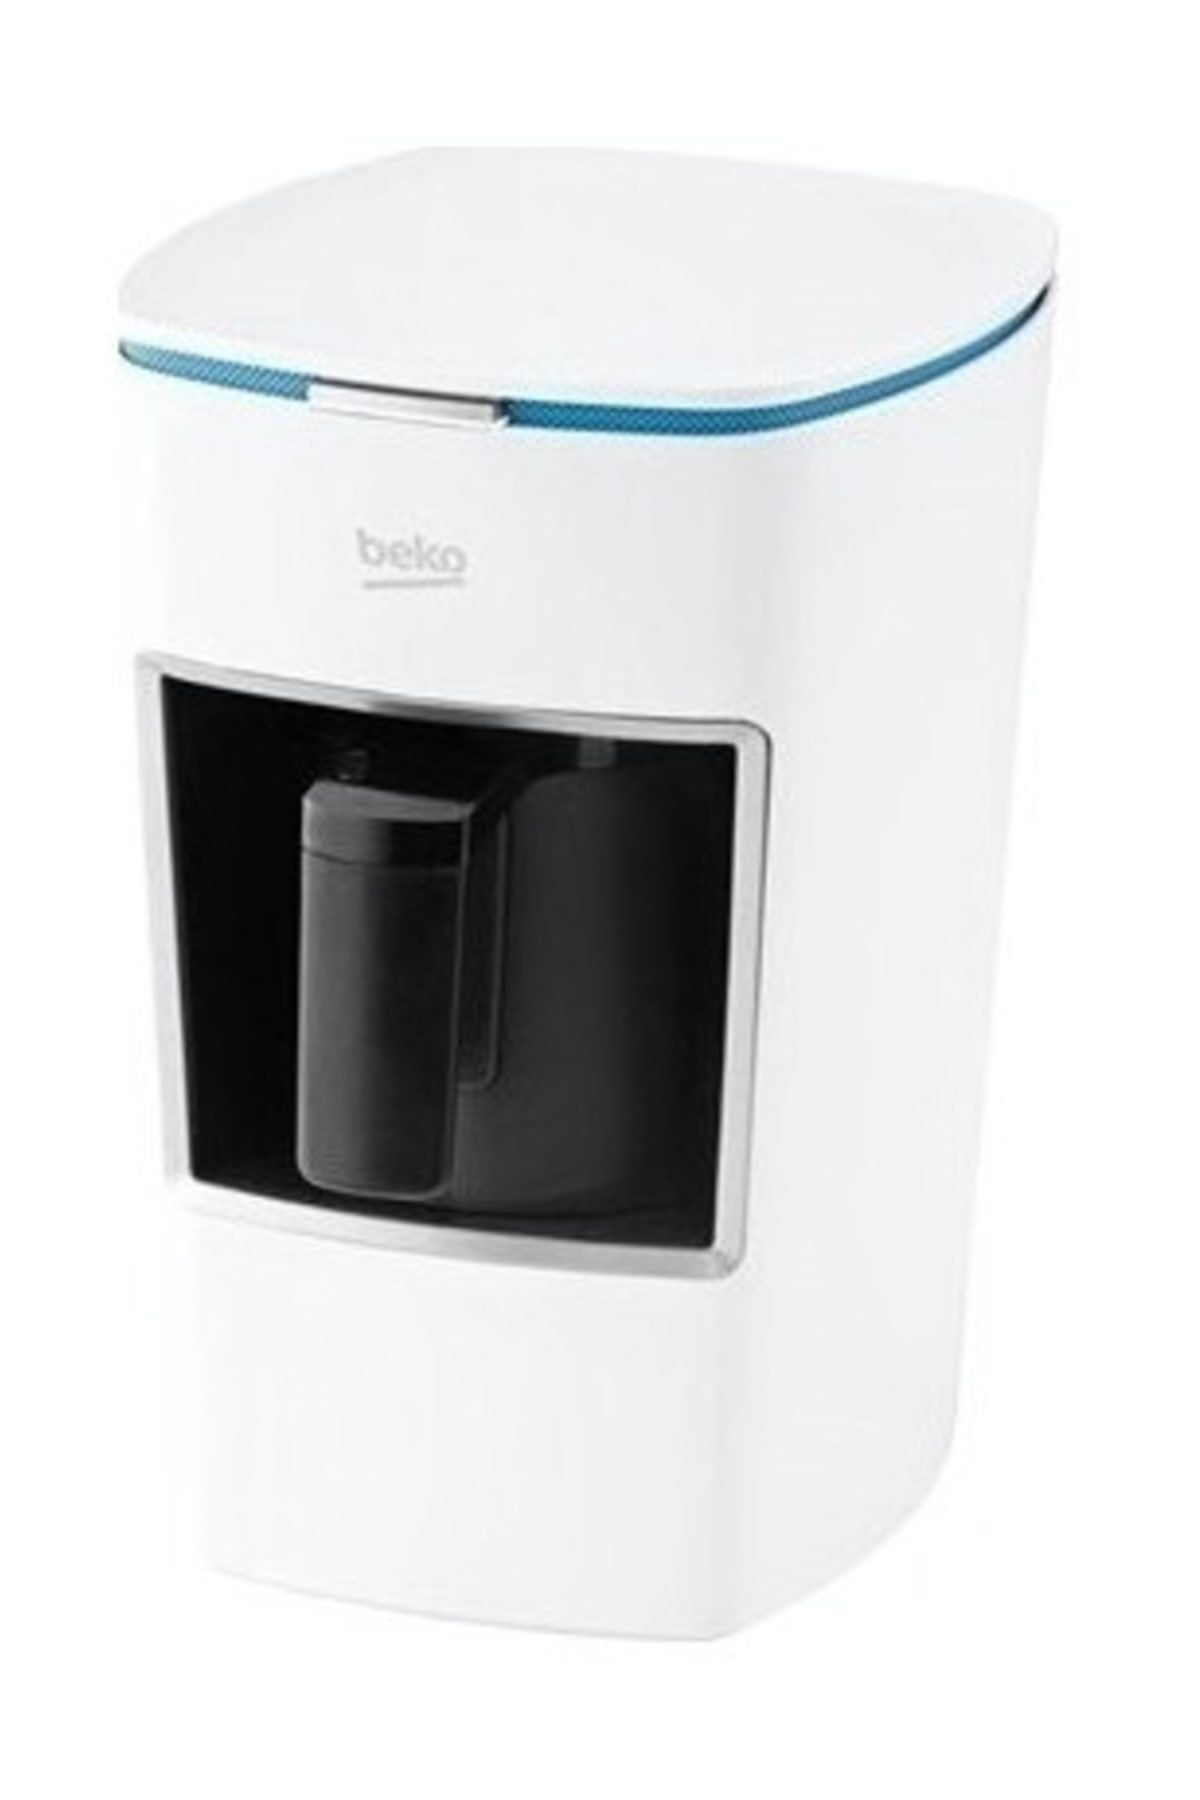 Beko Bkk 2300 Mini Keyf Beyaz Kahve Makinası